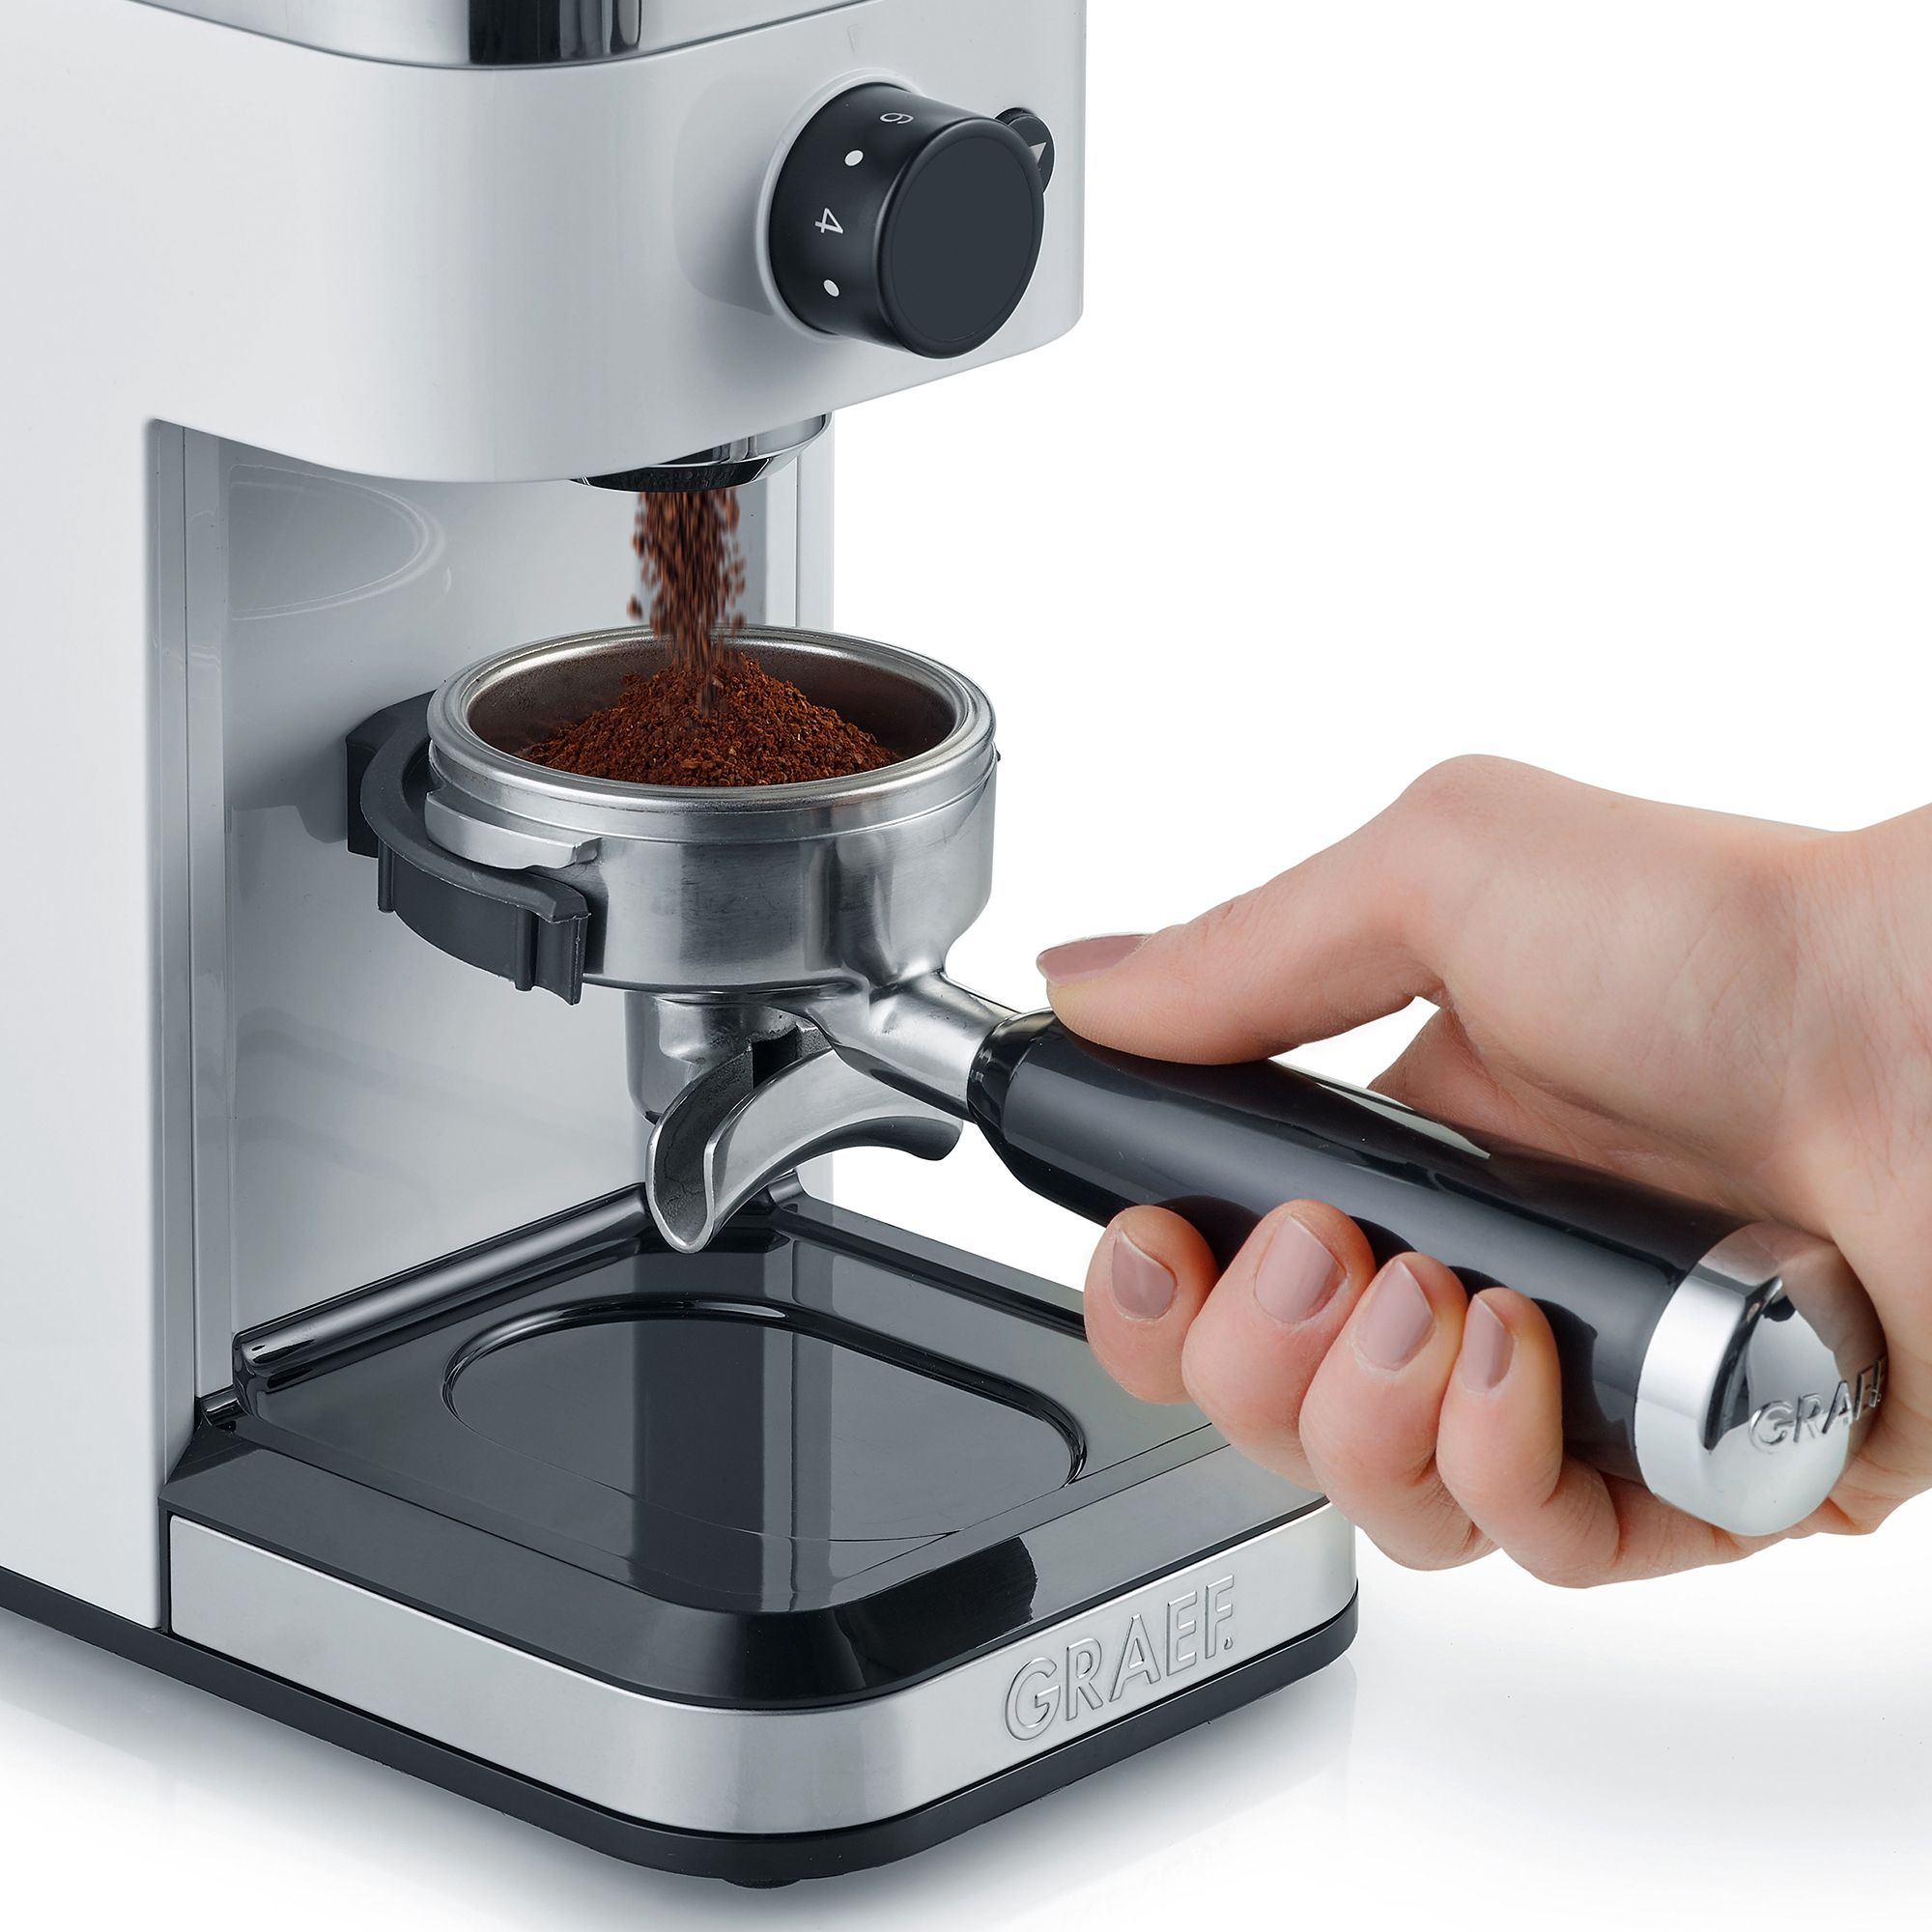 Graef - Coffee grinder - CM 501